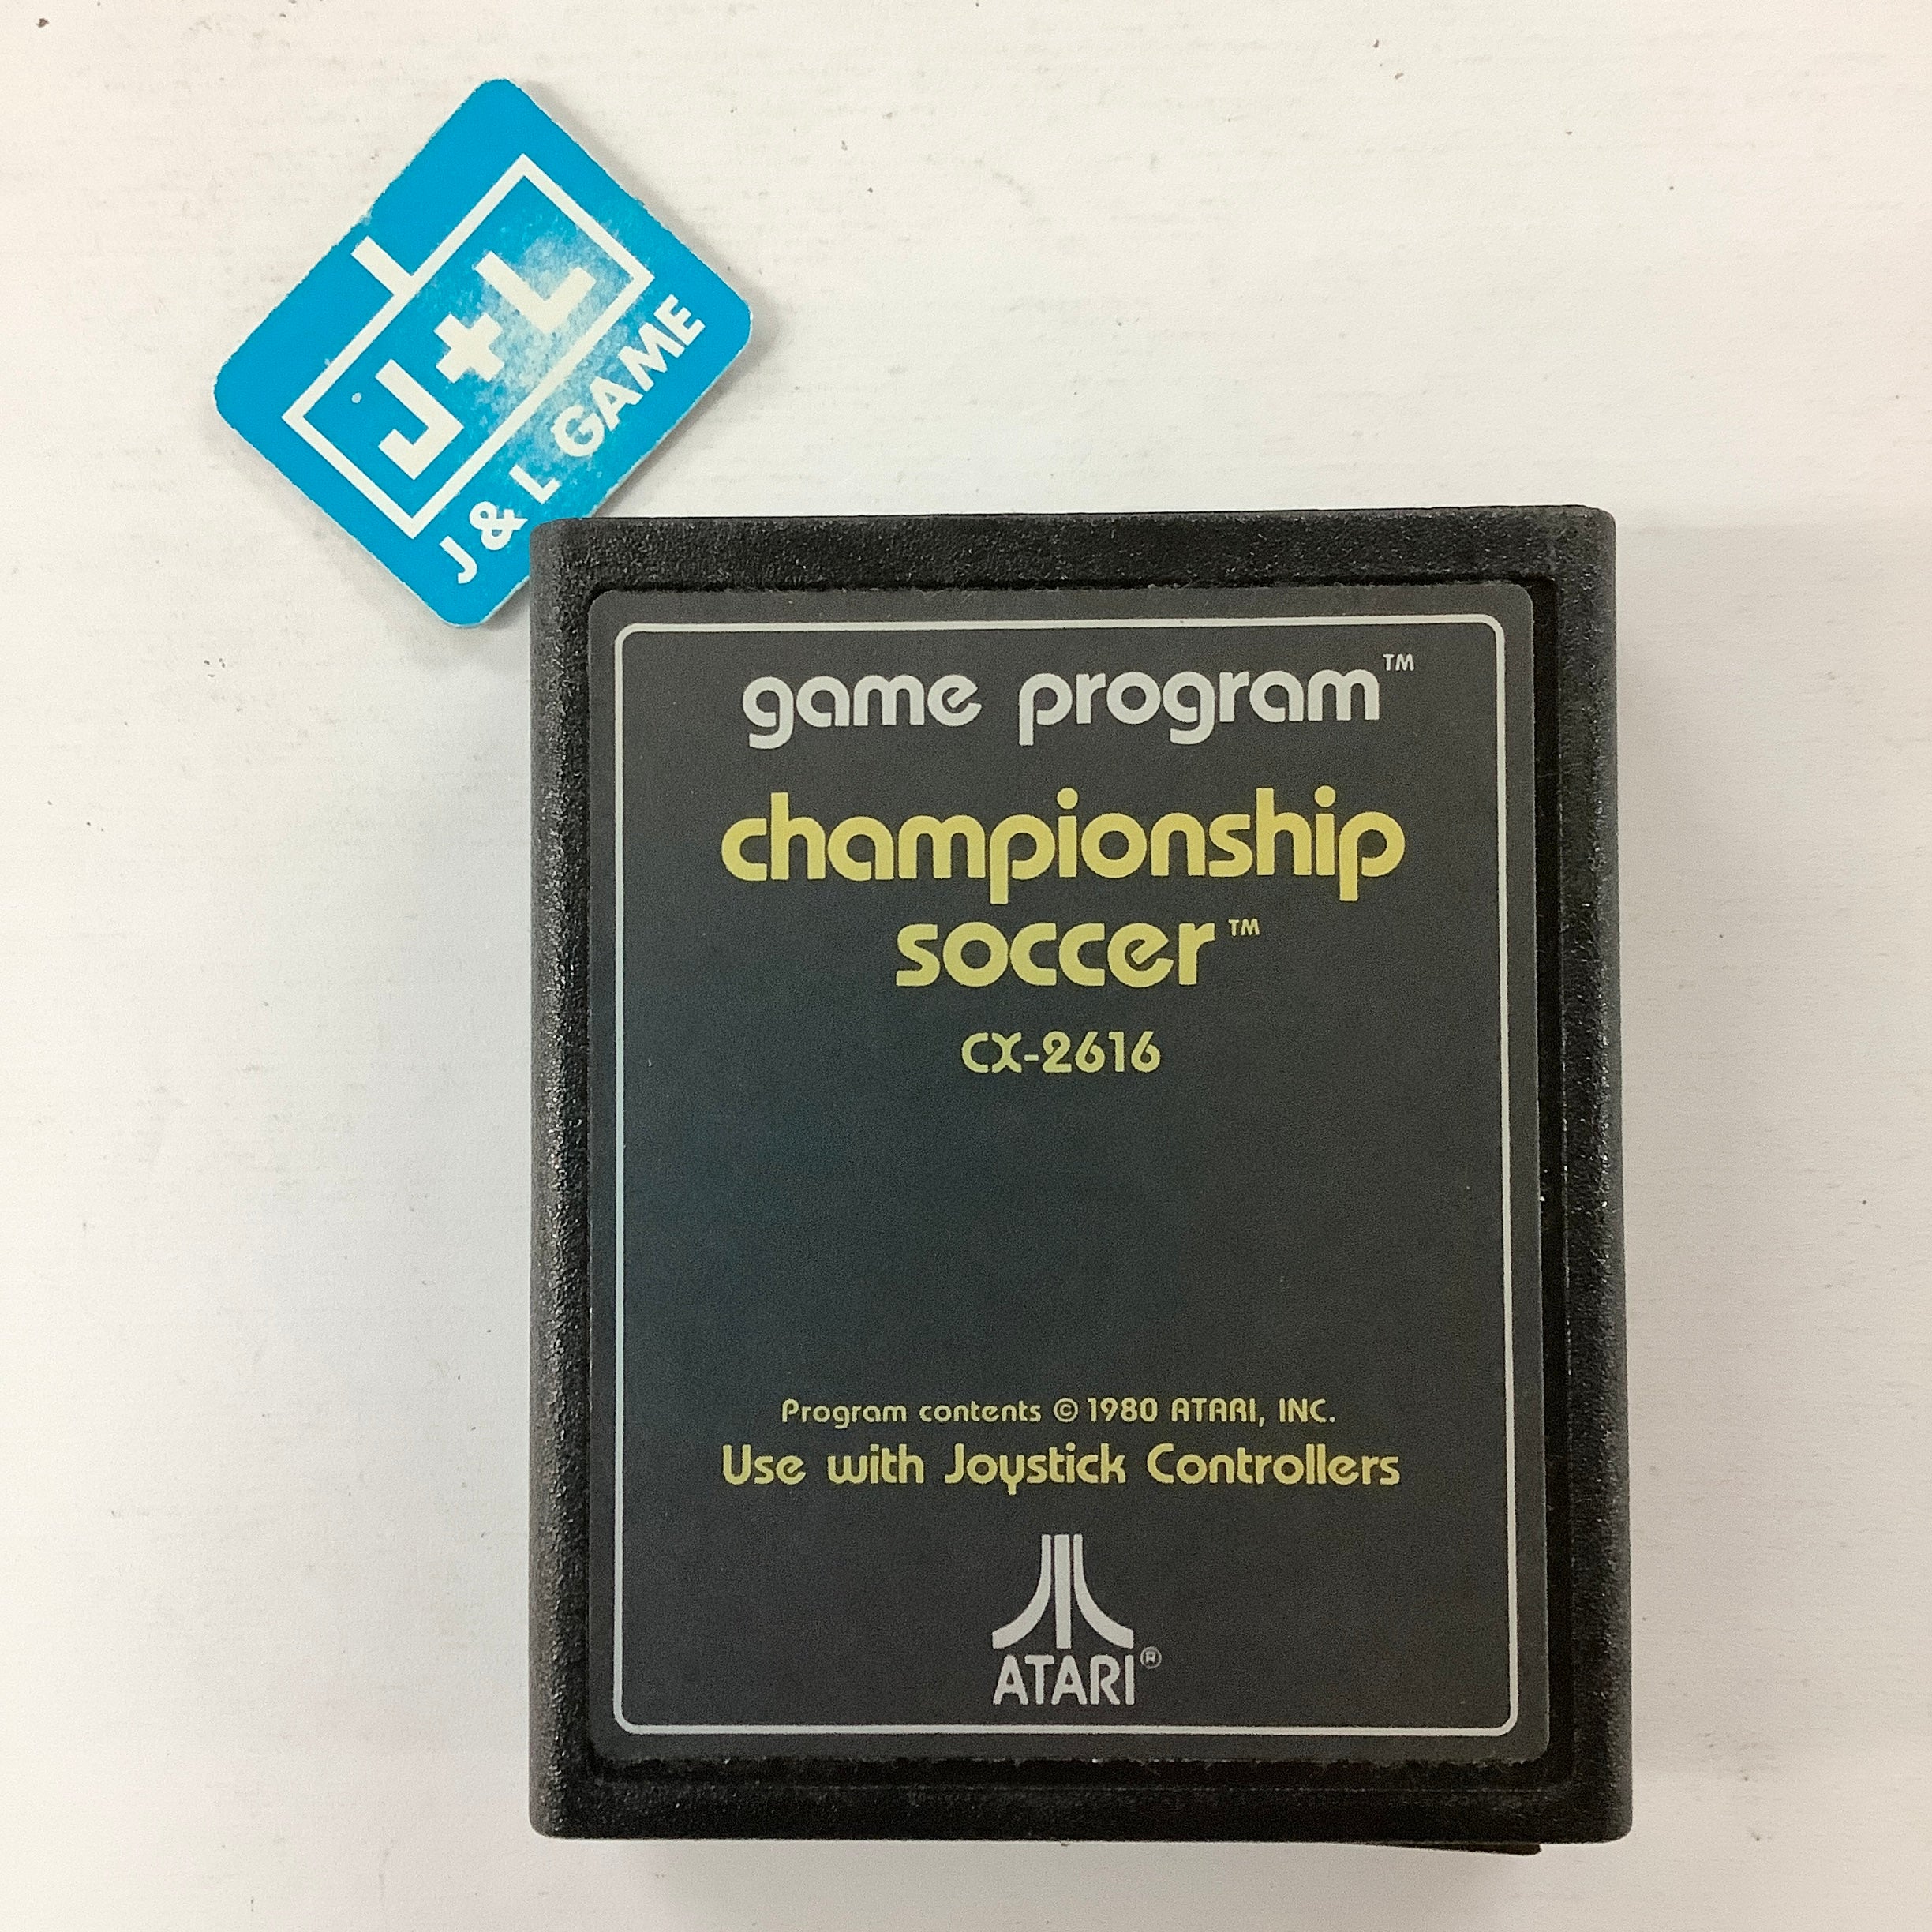 Pele's Soccer - Atari 2600 [Pre-Owned] Video Games Atari Inc.   